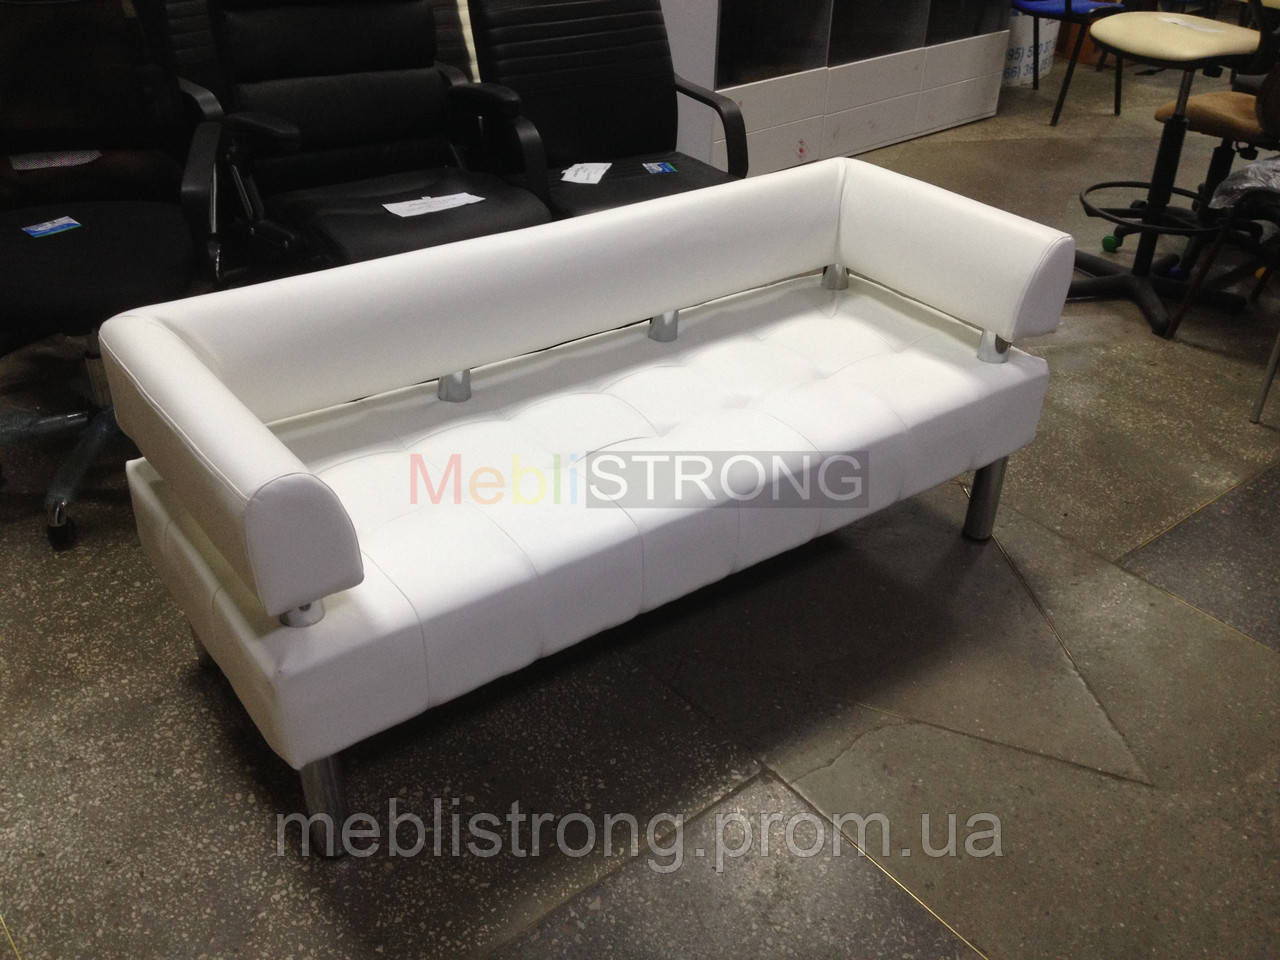 Офисный диван в офис Стронг (MebliSTRONG) - белый матовый